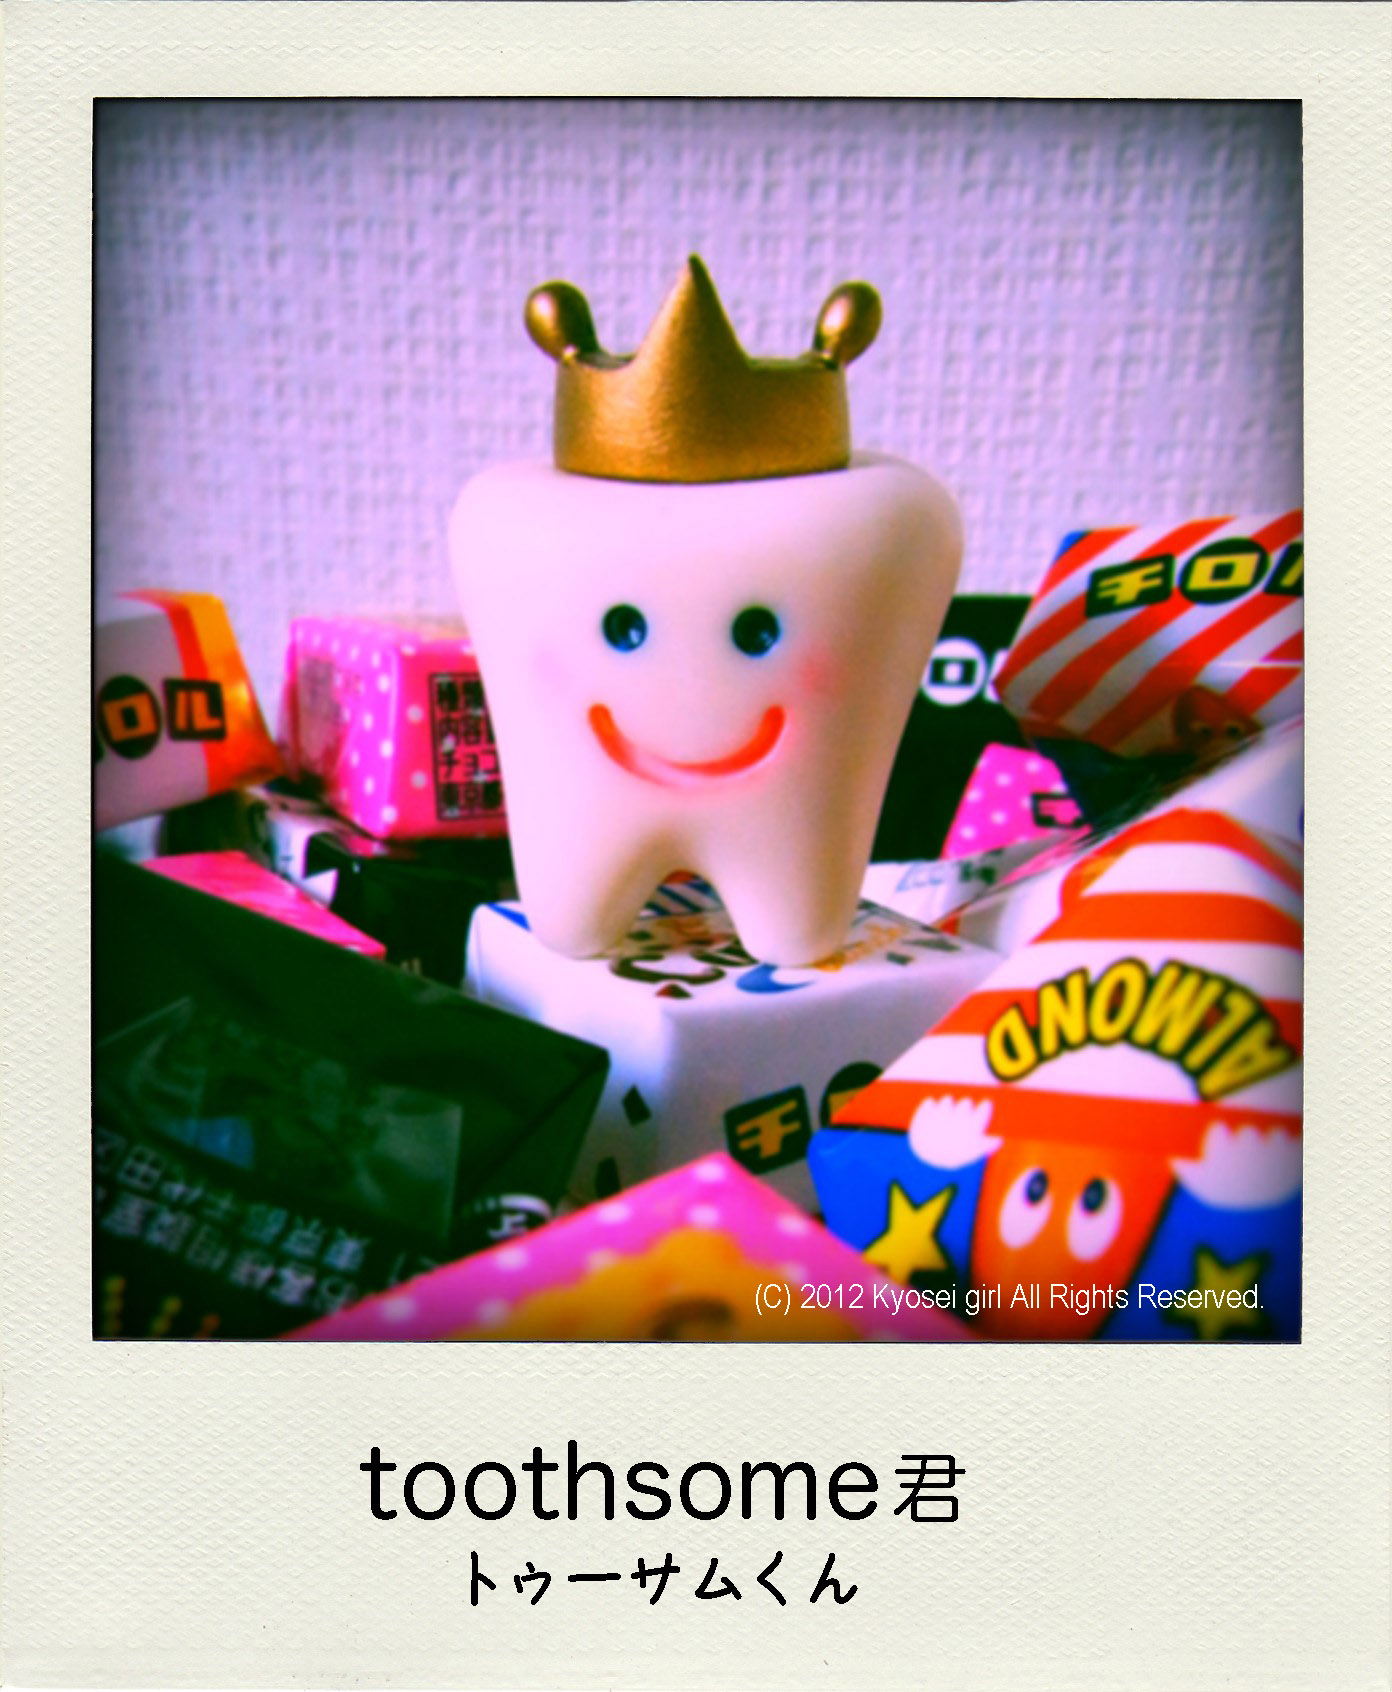 あの歯の展覧会が帰って来た？！“歯, The toothsome days! 2nd” 開催のお知らせ